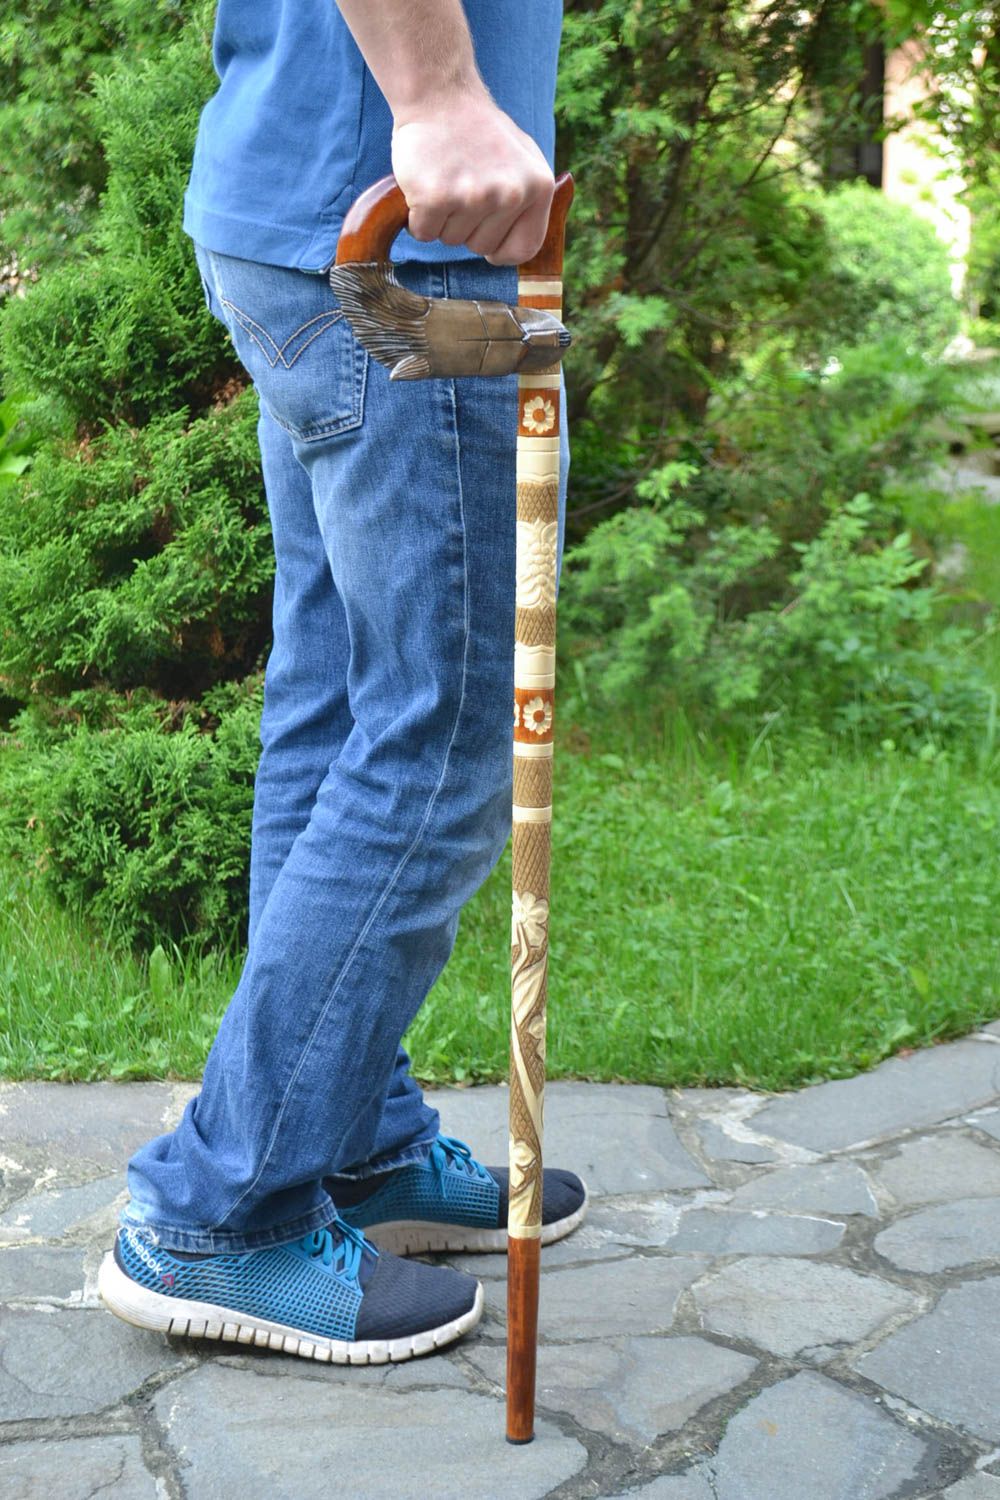 Canne de marche en bois faite main vernie originale cadeau pour homme Loup photo 1